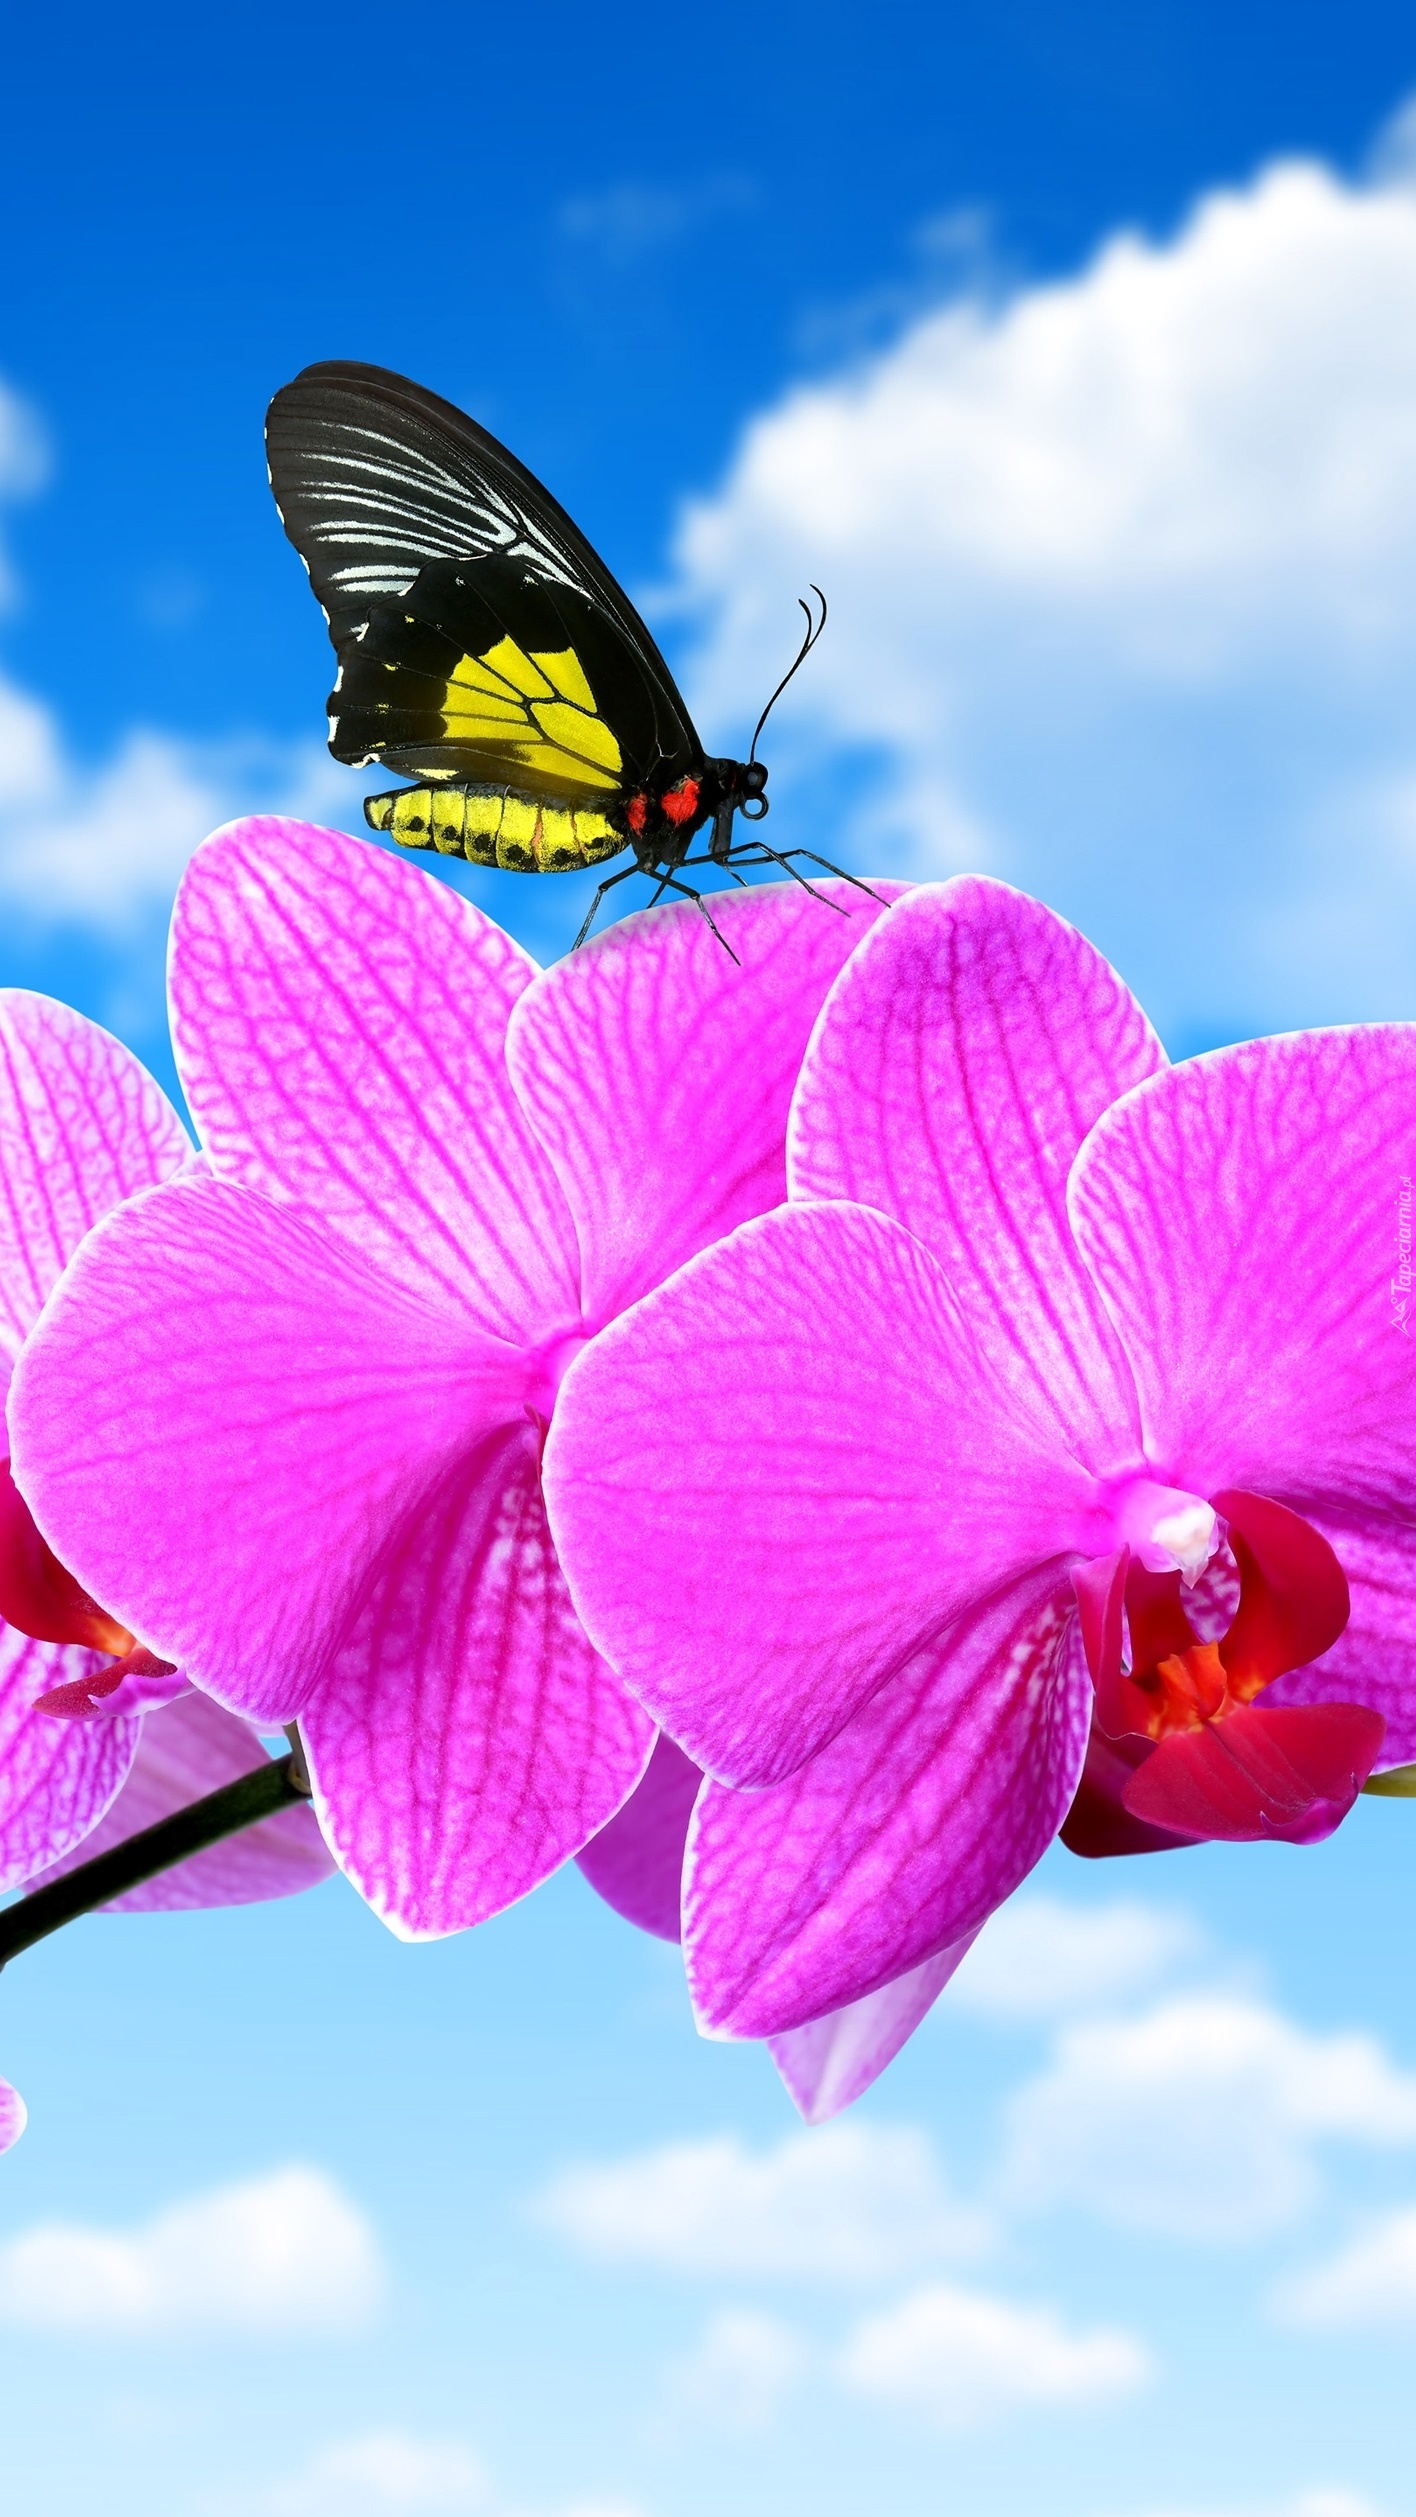 Motyl usiadł na różowym storczyku